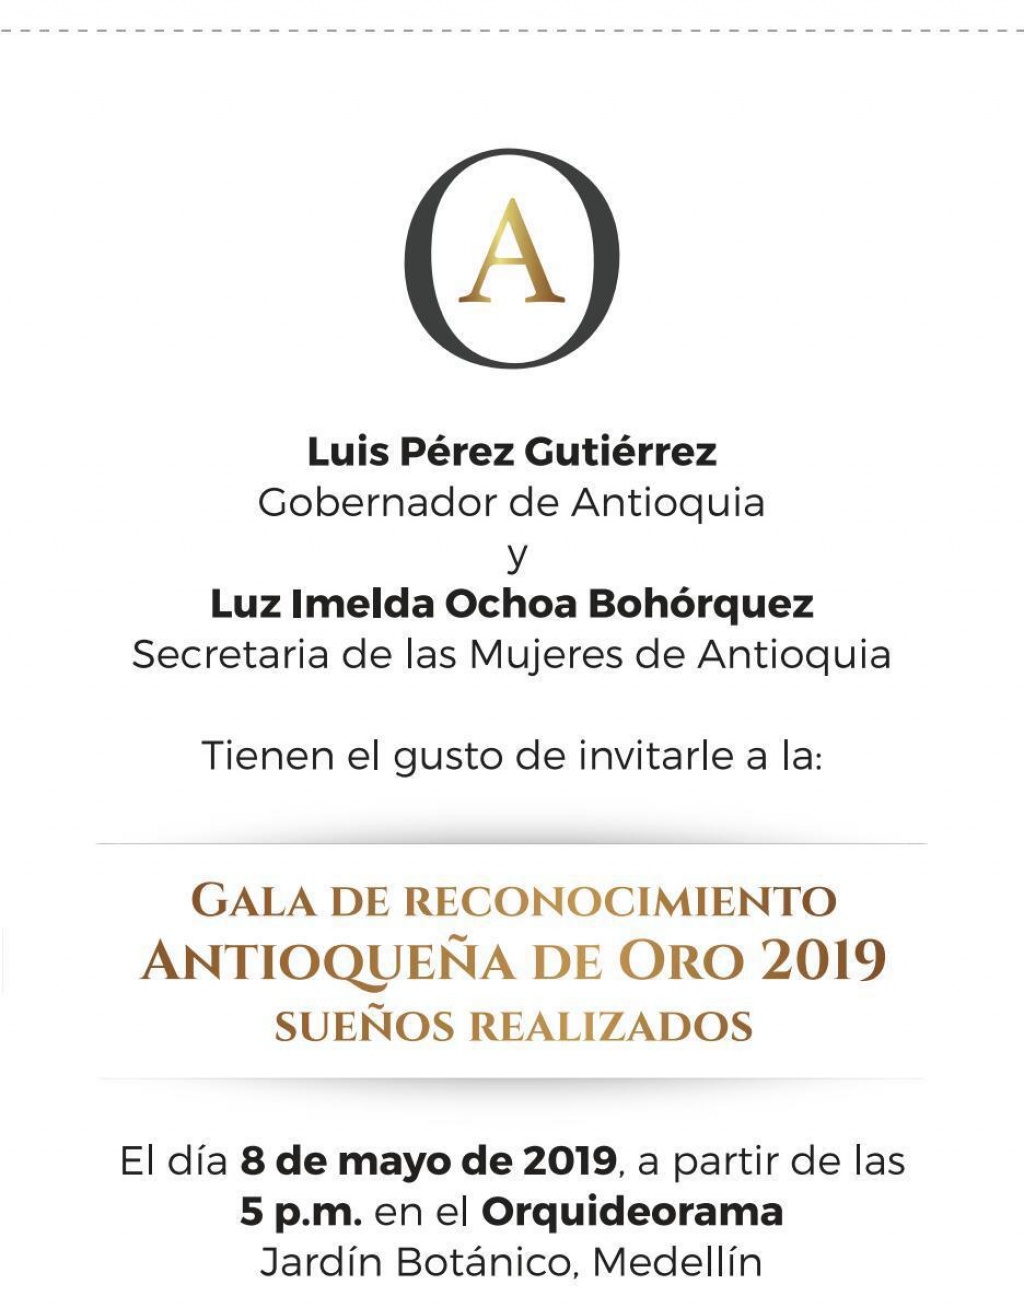 Invitación para mañana miércoles: Gala de Reconocimiento Antioqueña de Oro 2019. Sueños Realizados